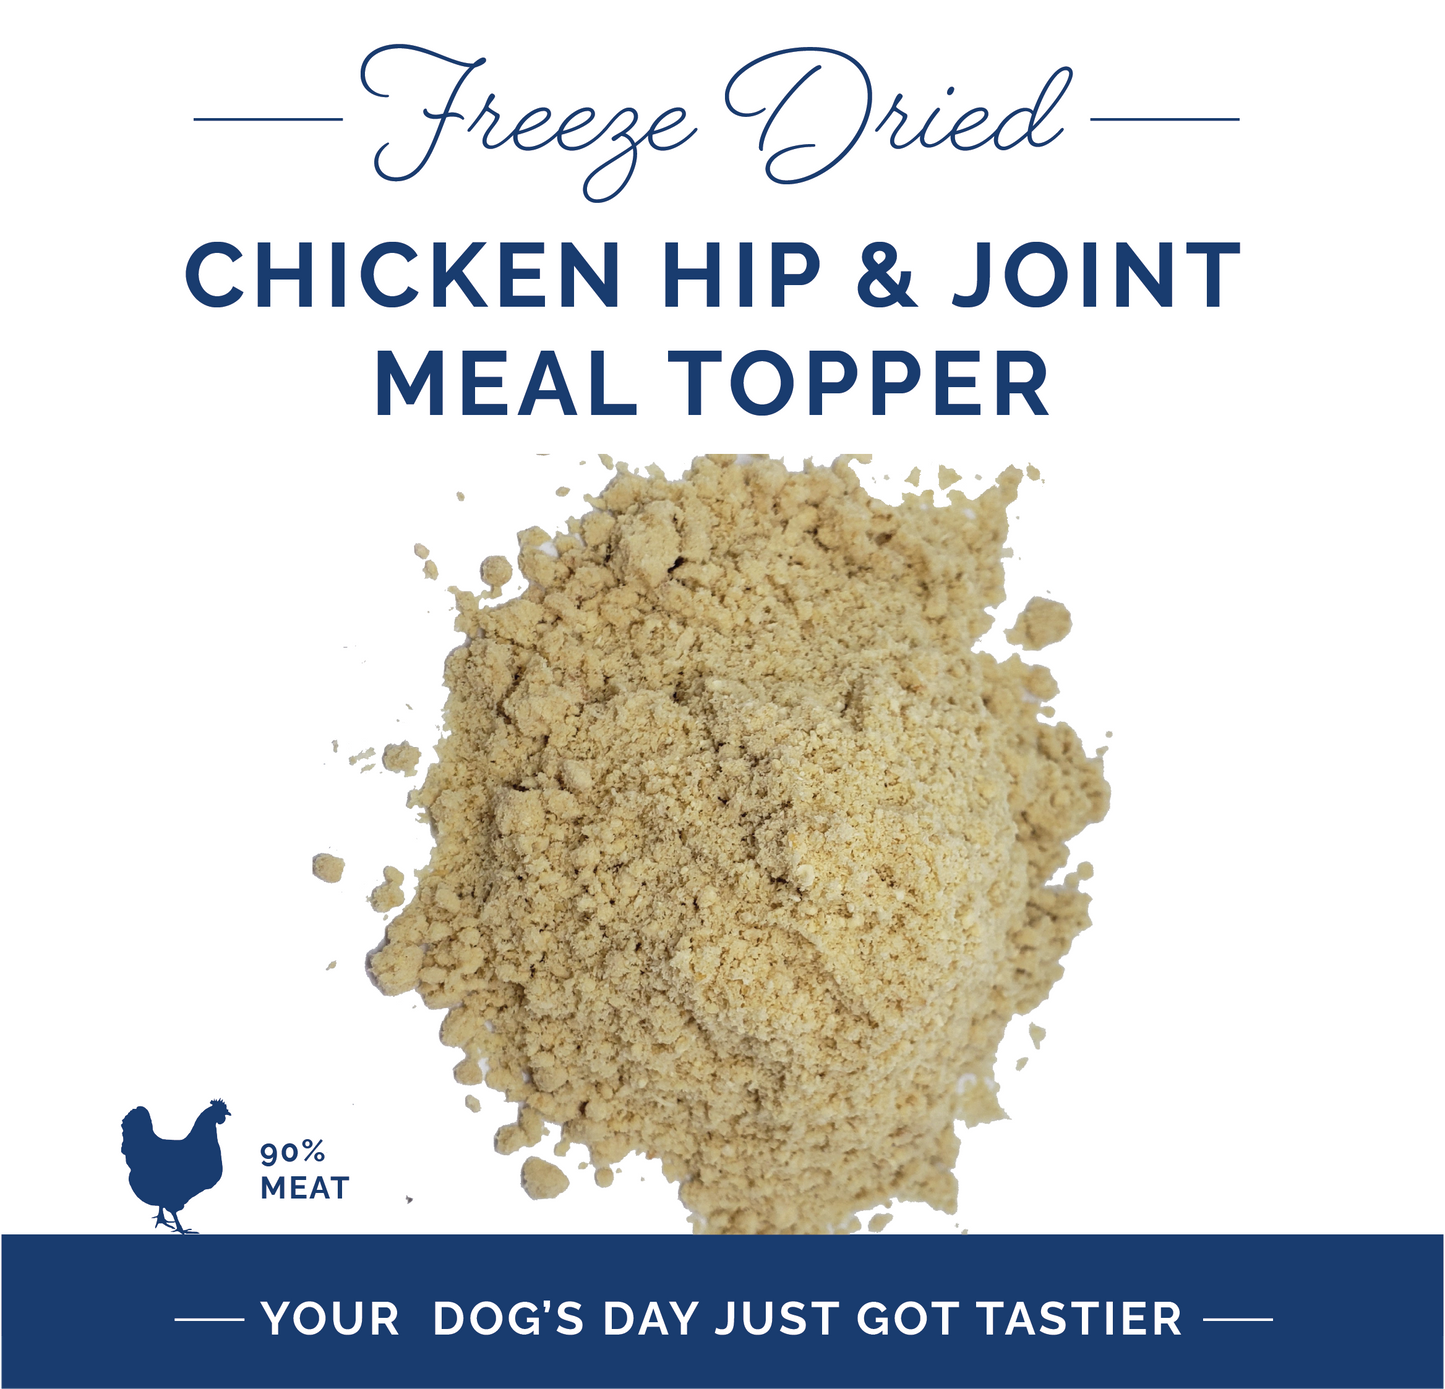 Chicken Hip & Joint Supplement